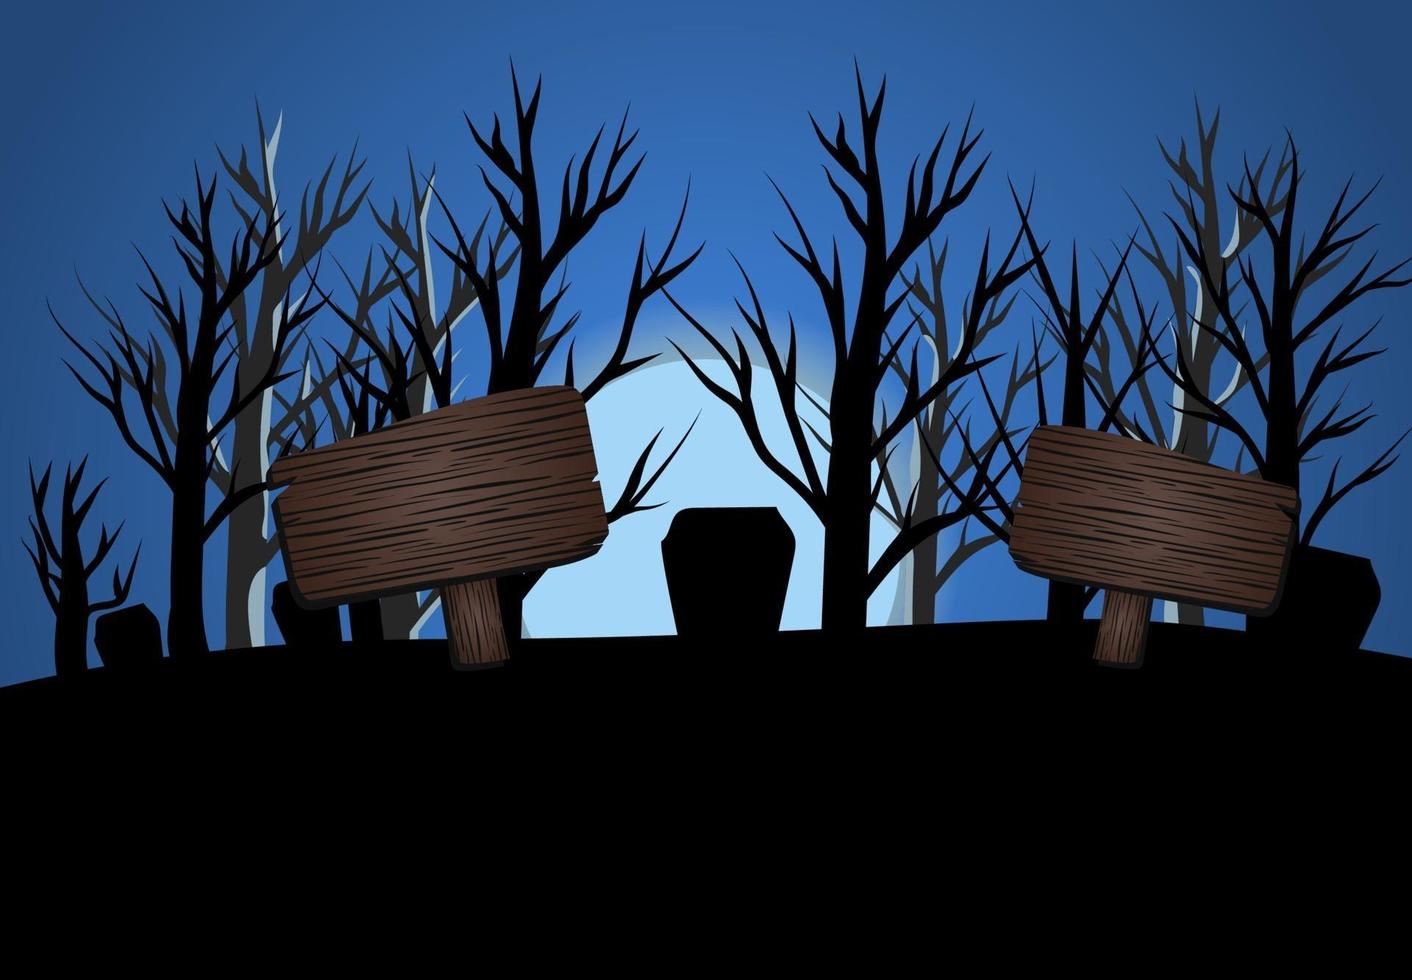 Halloween azul oscuro tres ilustración de vector de luz de luna, concepto de volante de banner, felices fiestas fondo de calabazas oscuras, plantilla de texto de mesa de madera